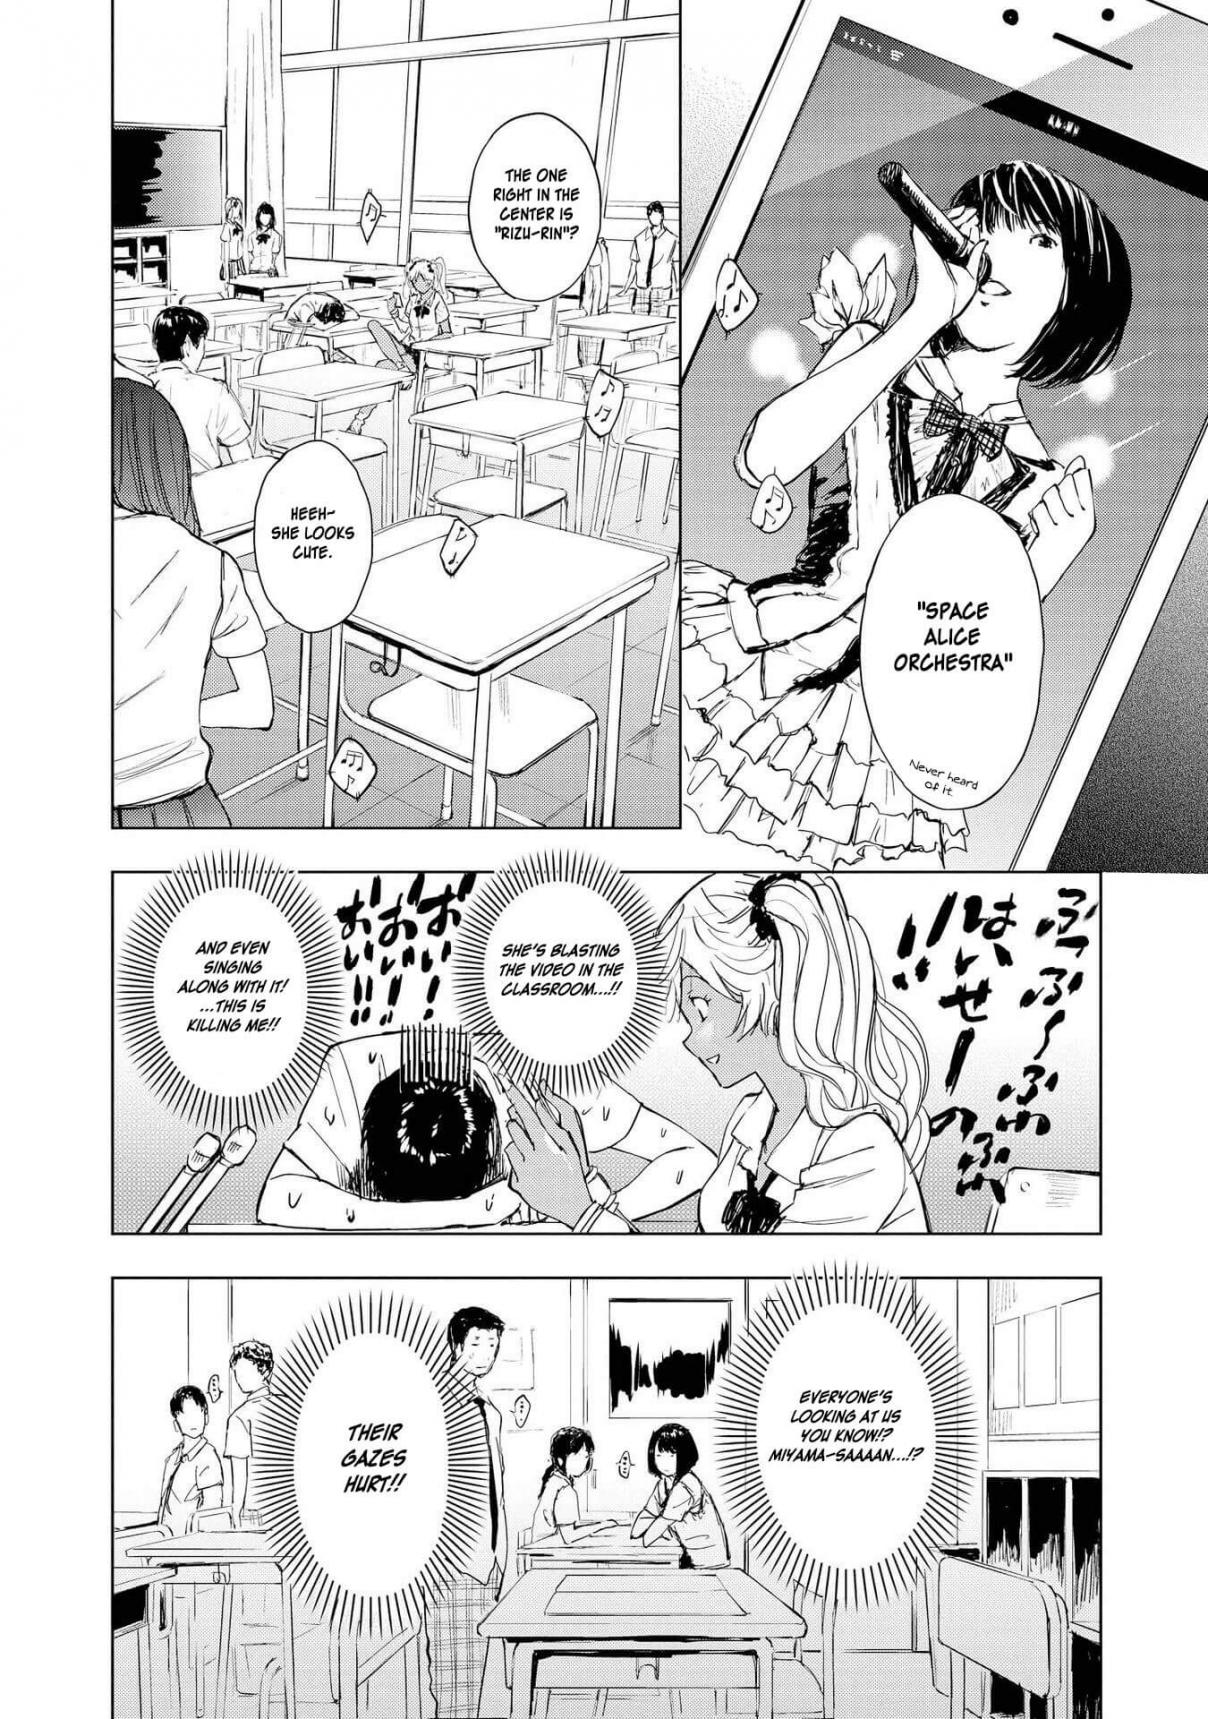 Hyottoshite Gyaru wa Orera ni Yasashii no Dewa? Anthology Comic Vol. 2 Ch. 12 Cheering Song